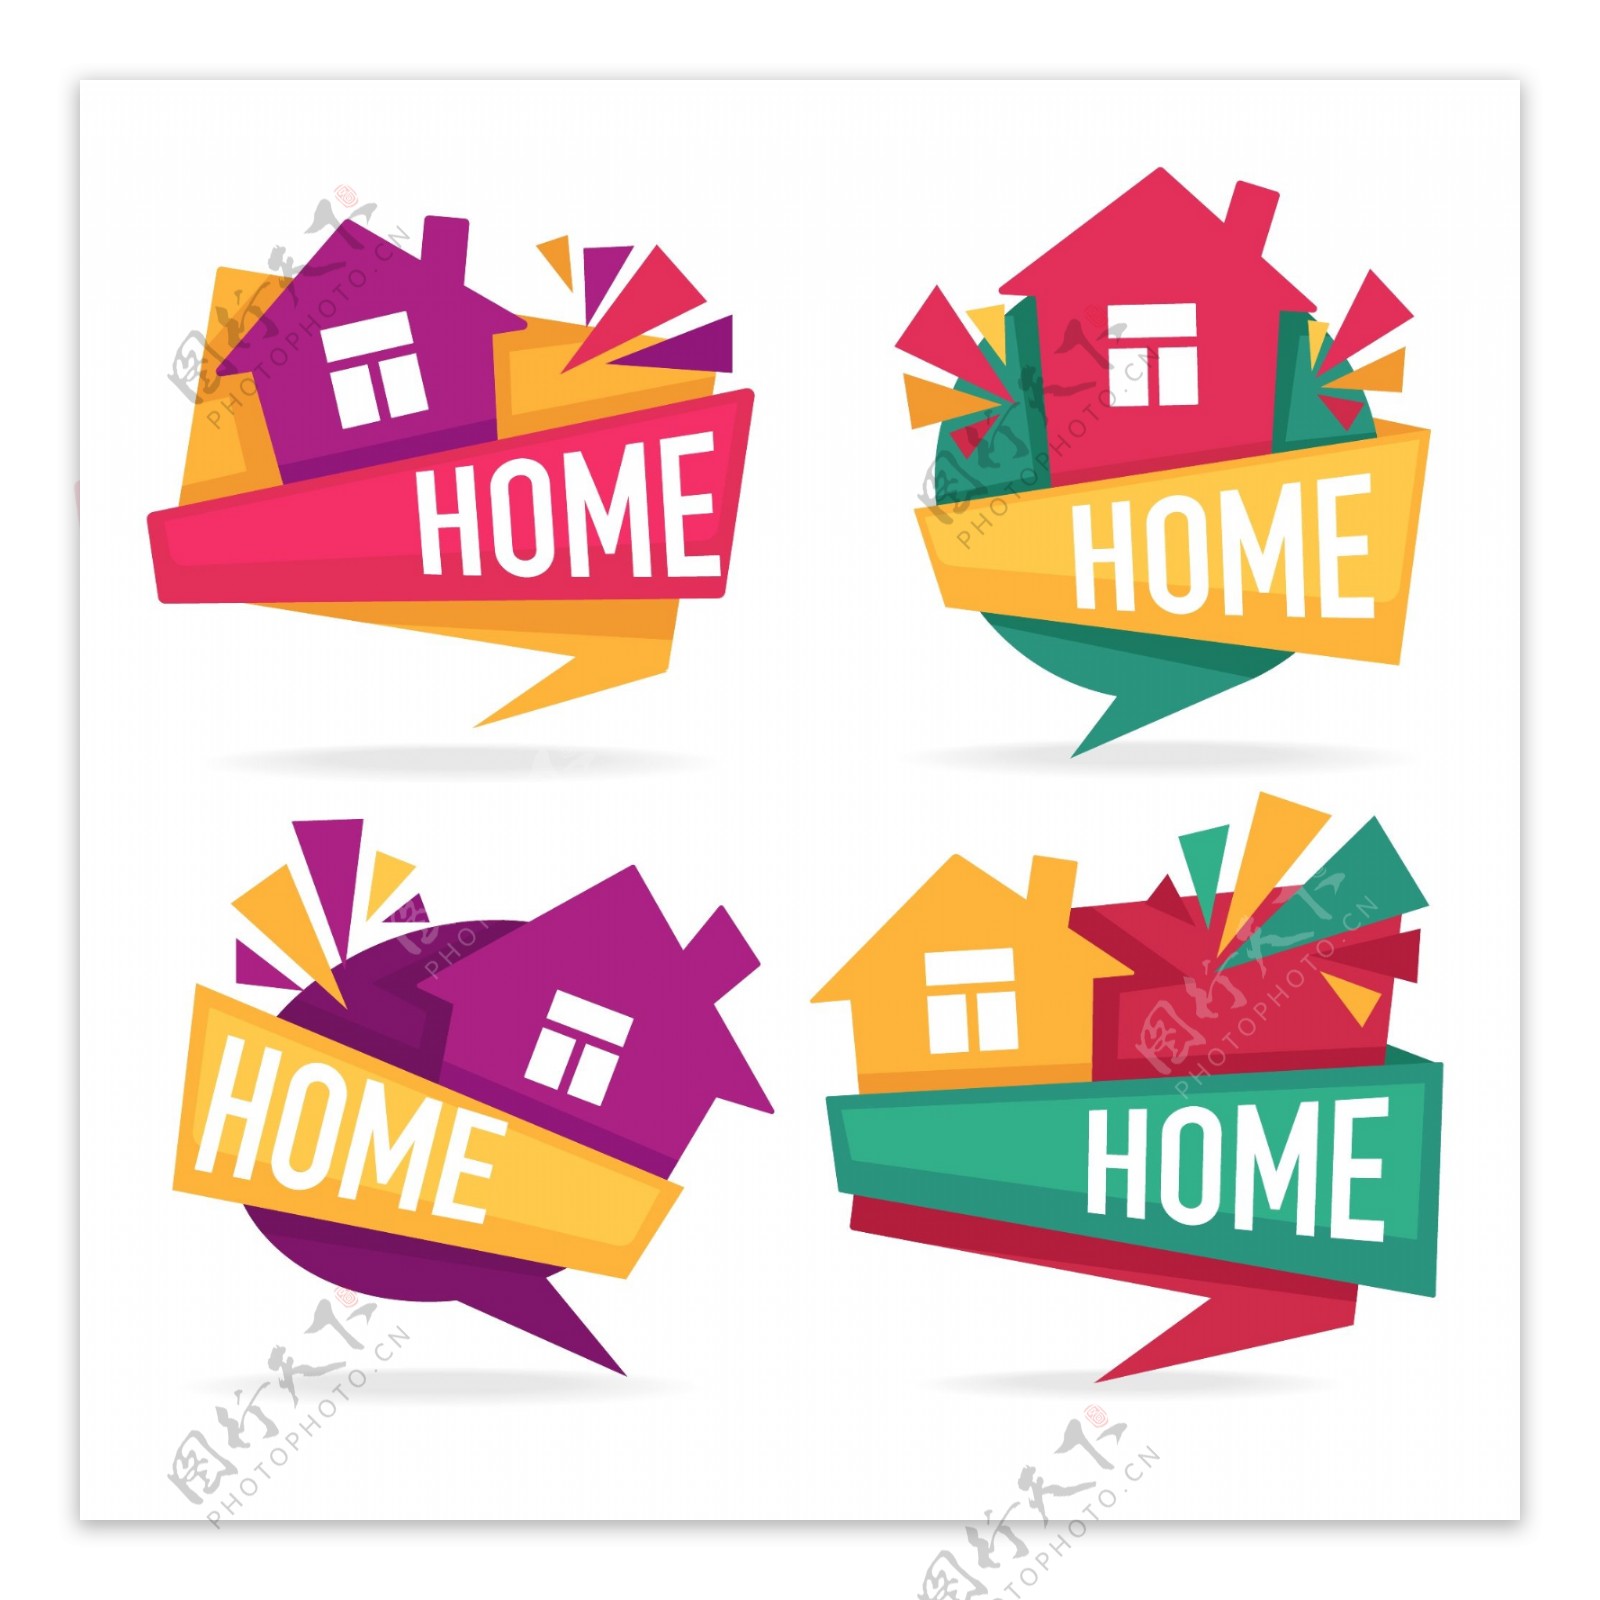 4款彩色房屋不动产HOME标签矢量素材